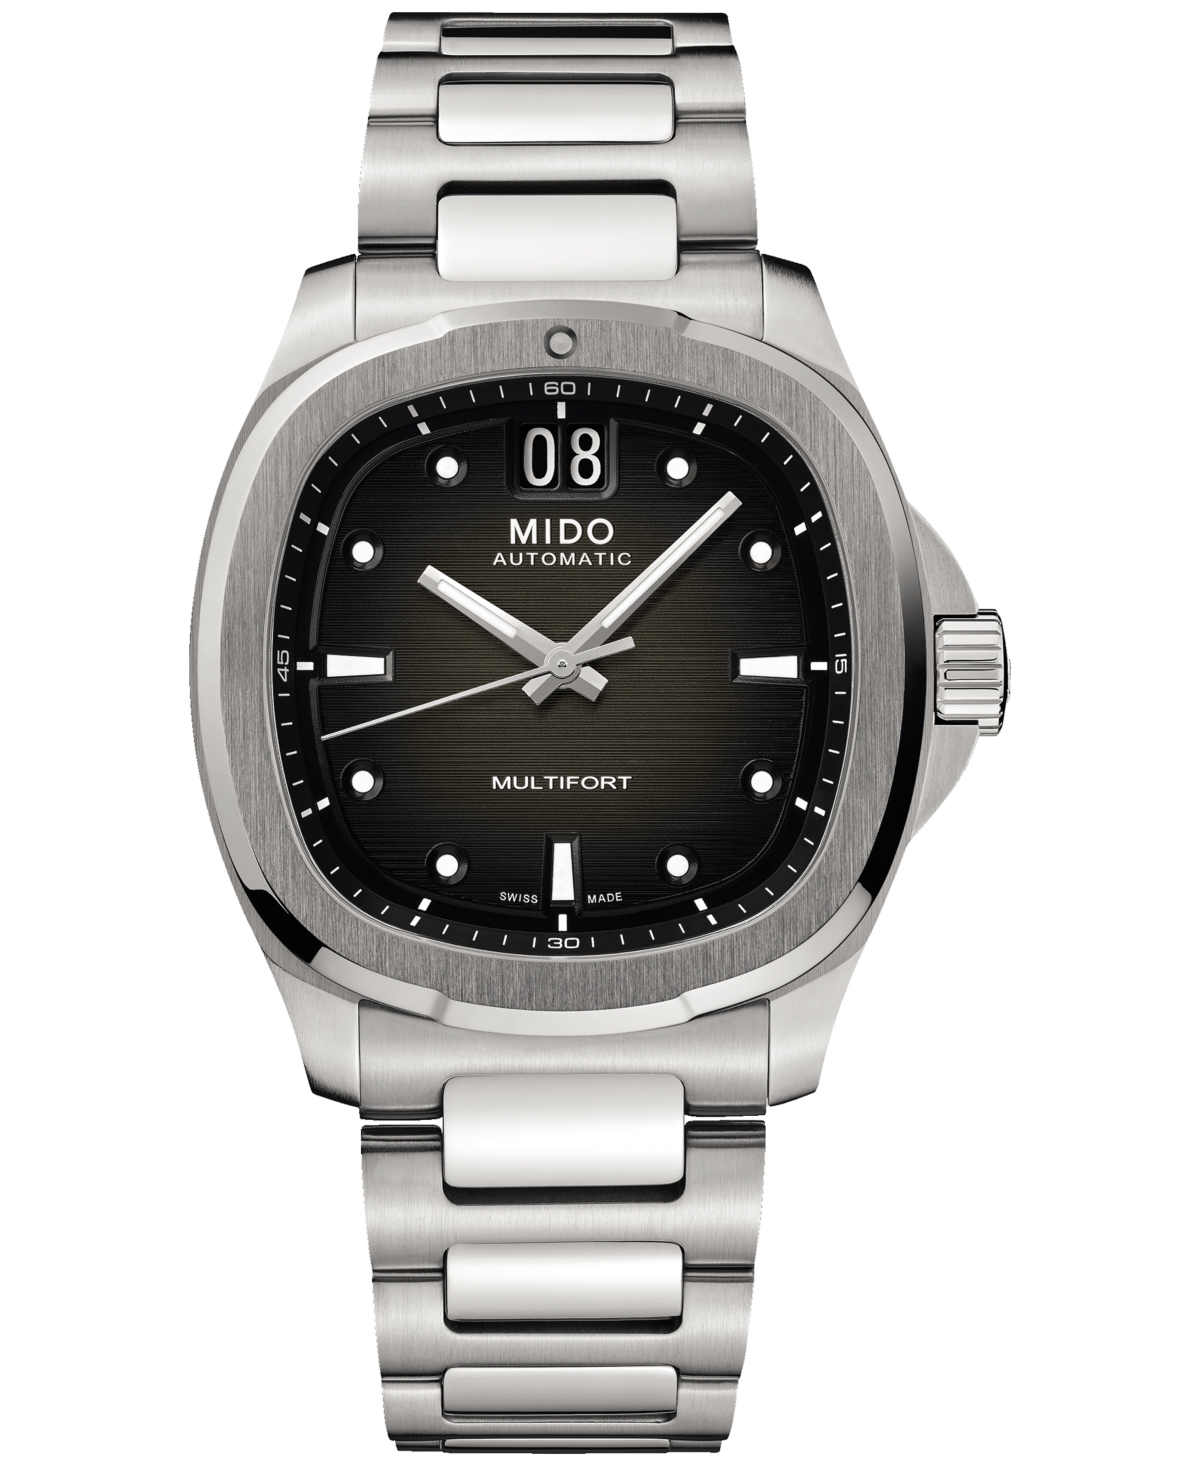 Mido Men's Swiss Automatic Multifort Stainless Steel Bracelet Watch 41mm In Grey